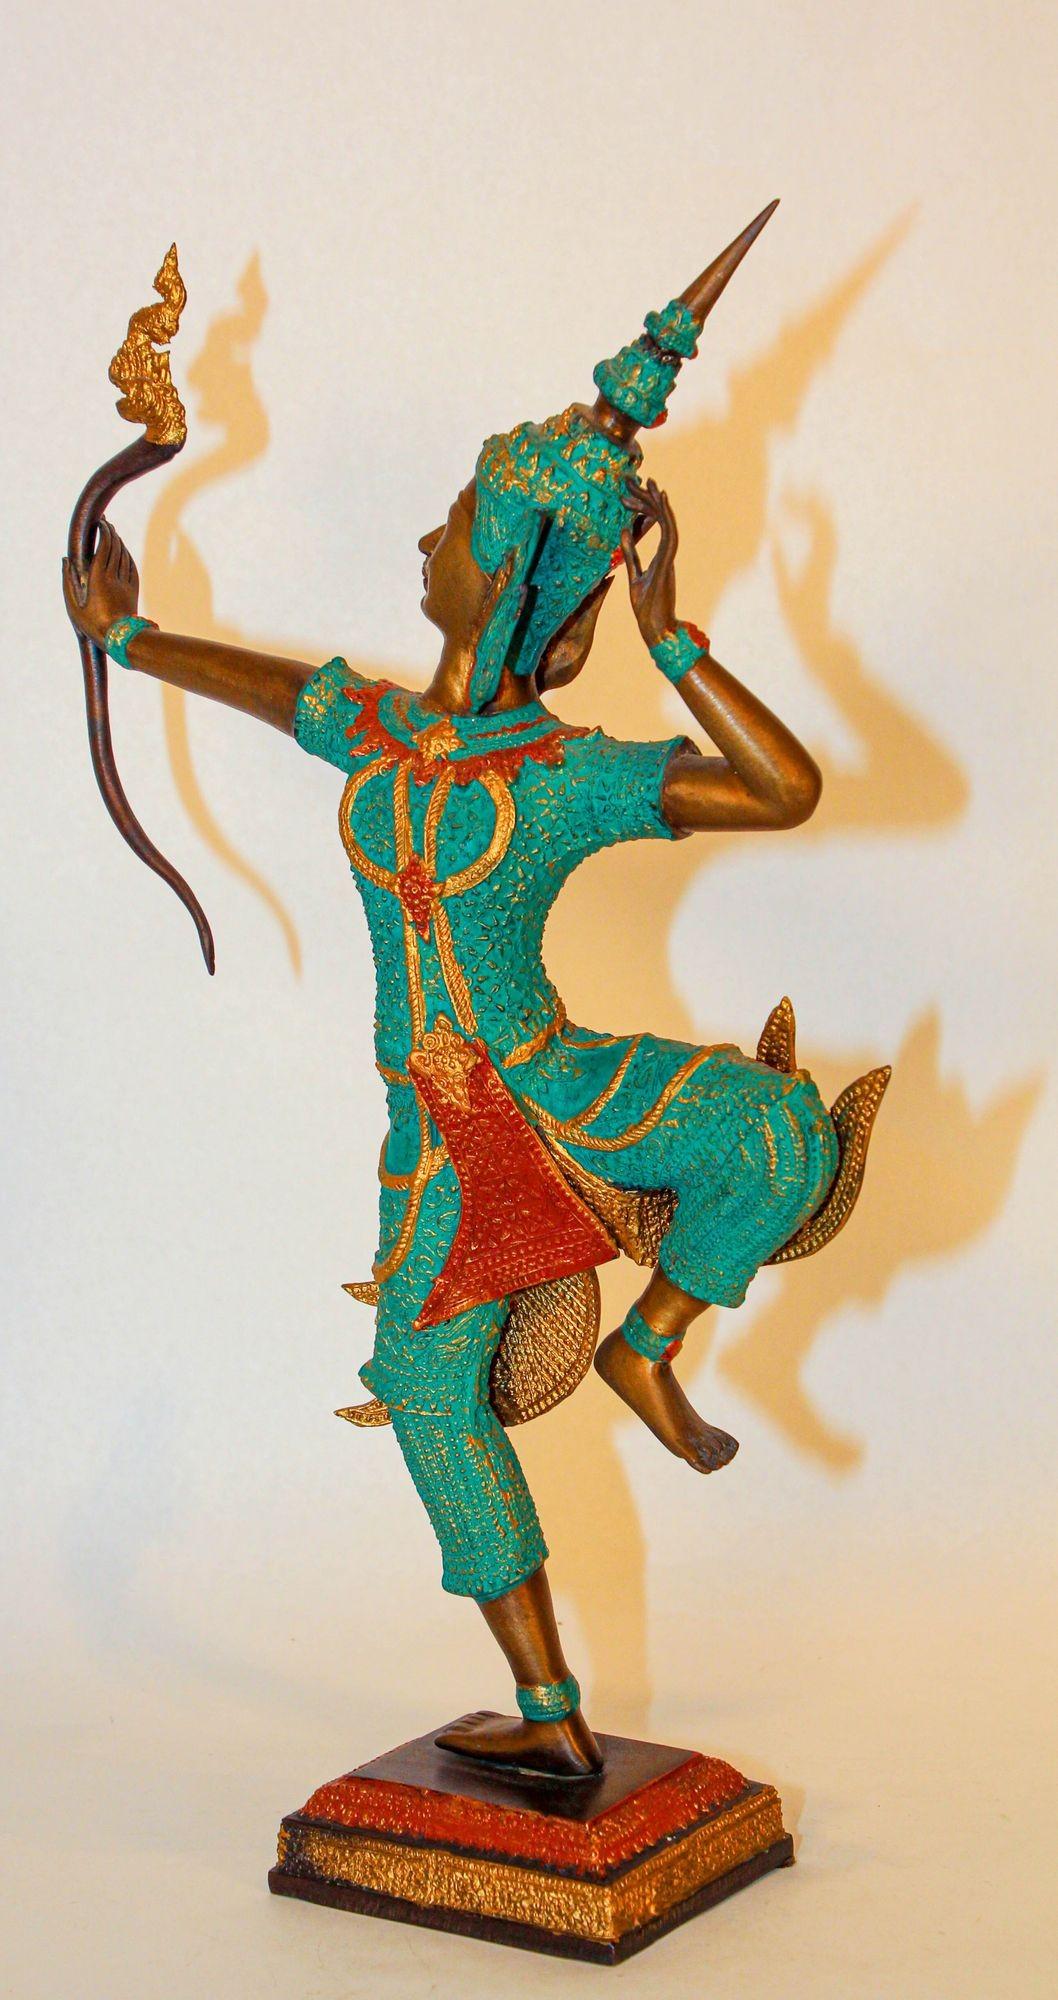 Vintage Bronzestatue in Gold und Grün von Prinz Rama, der einen Pfeil abschießt.
Die große Bronzeskulptur zeigt Lord Rama, eine verehrte Figur der Hindu-Mythologie, majestätisch stehend mit kraftvollem und anmutigem Auftreten.
Die mit viel Liebe zum